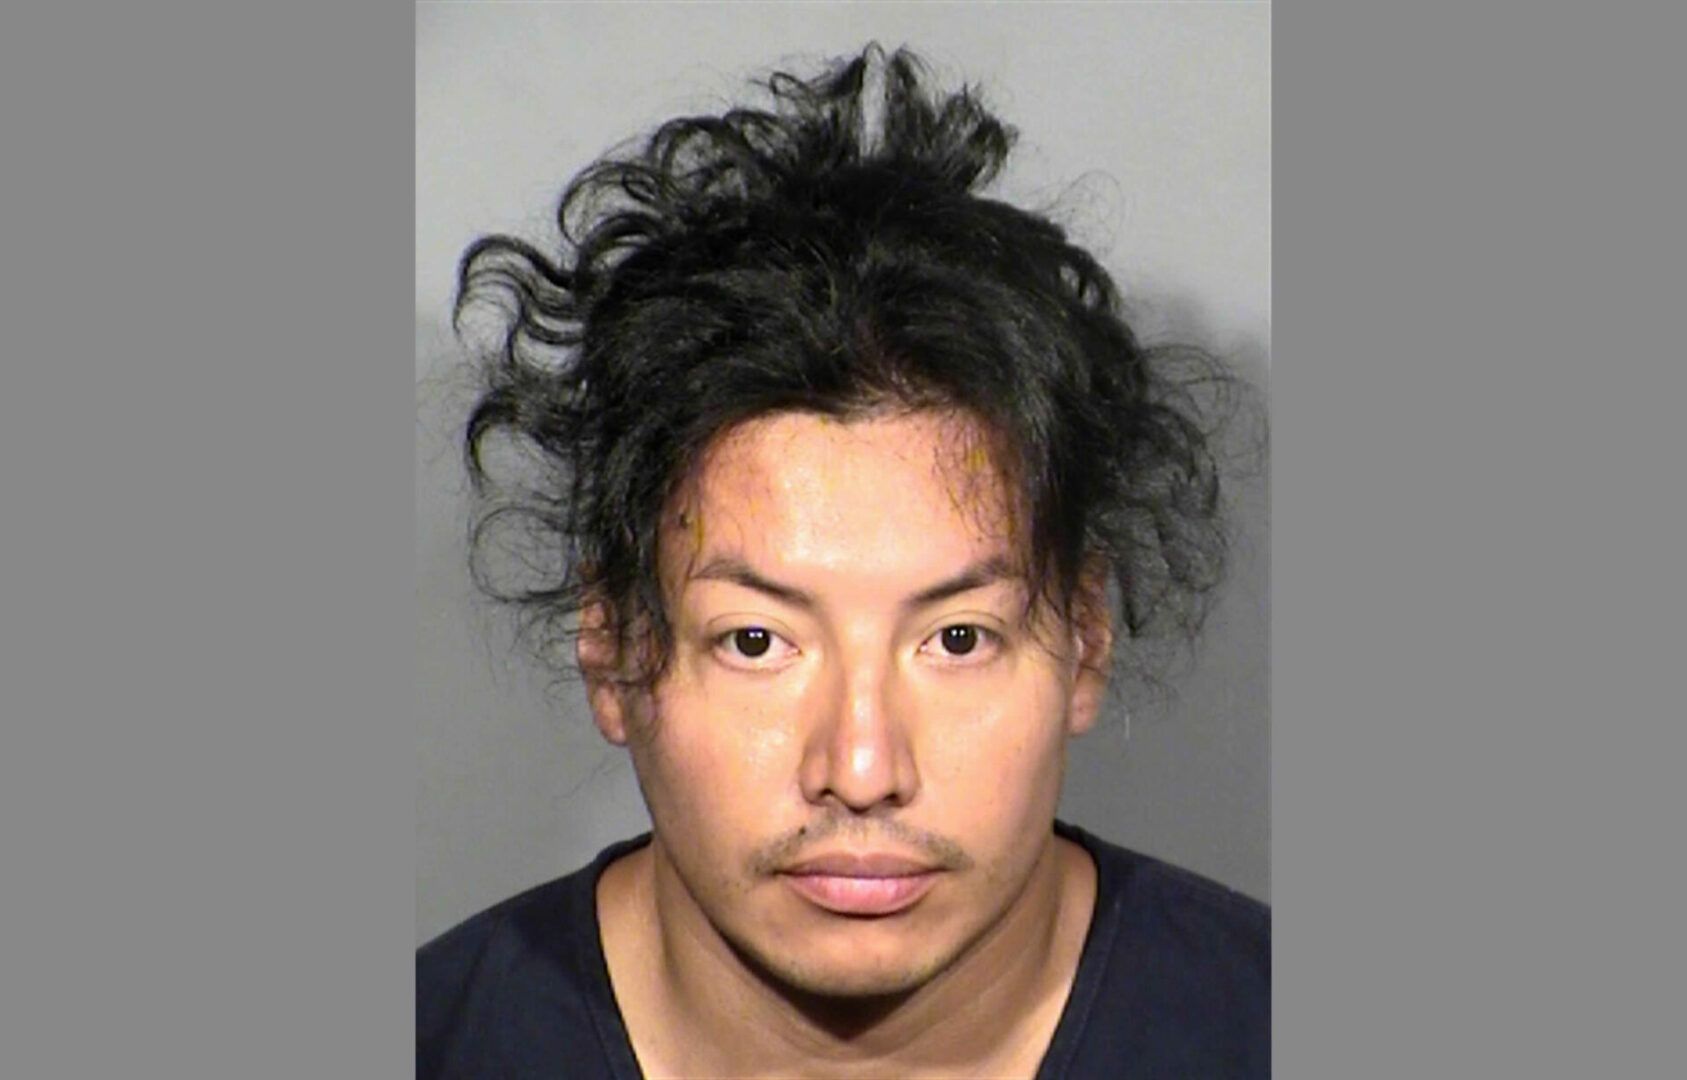 Acusan de asesinato a sospechoso de apuñalamiento masivo en Las Vegas